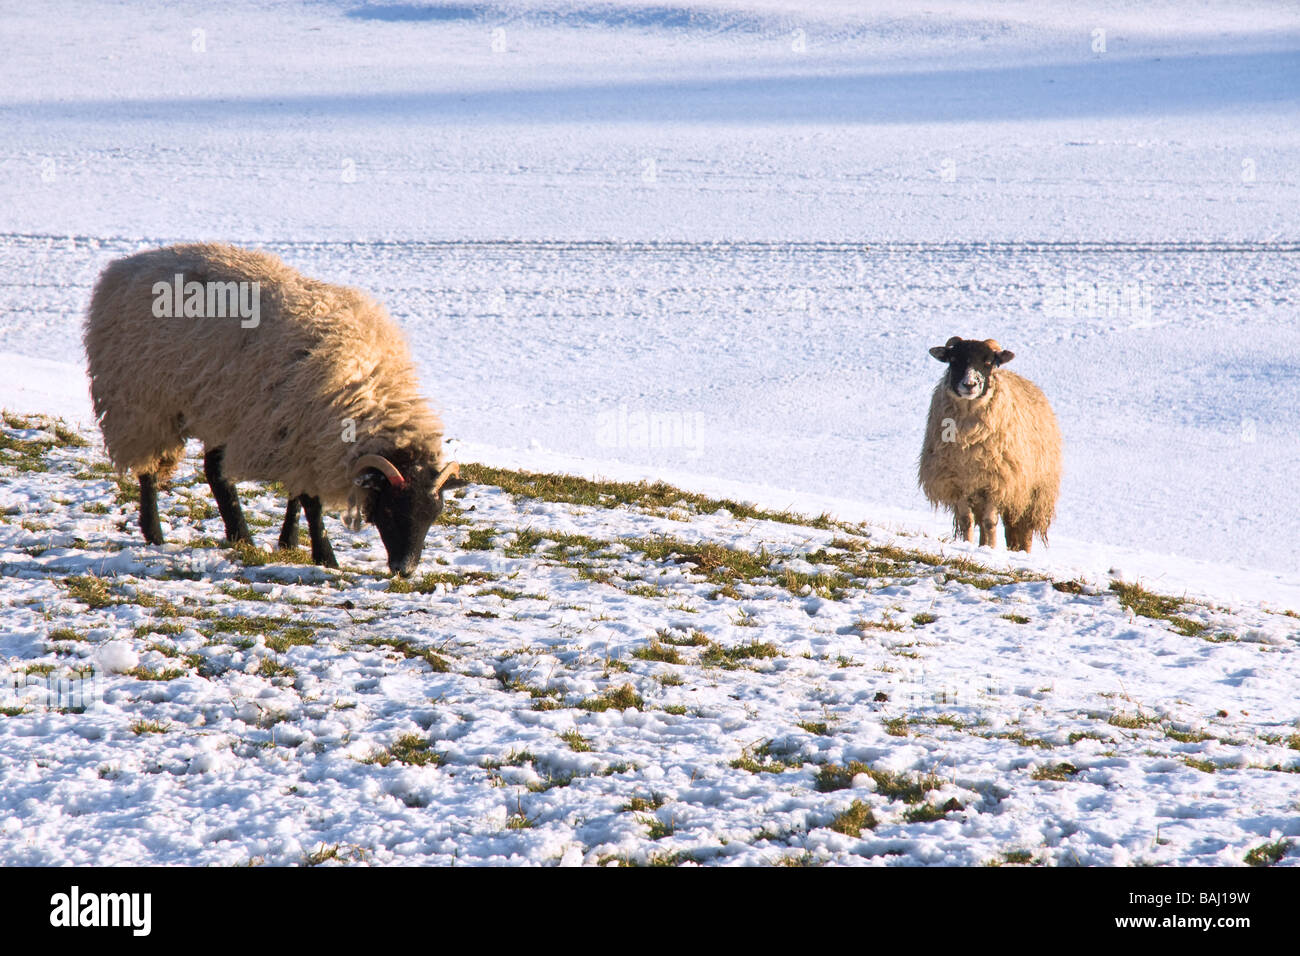 Swaledale moutons dans la neige. Photo prise près de Hardraw dans la région de Wensleydale. Banque D'Images